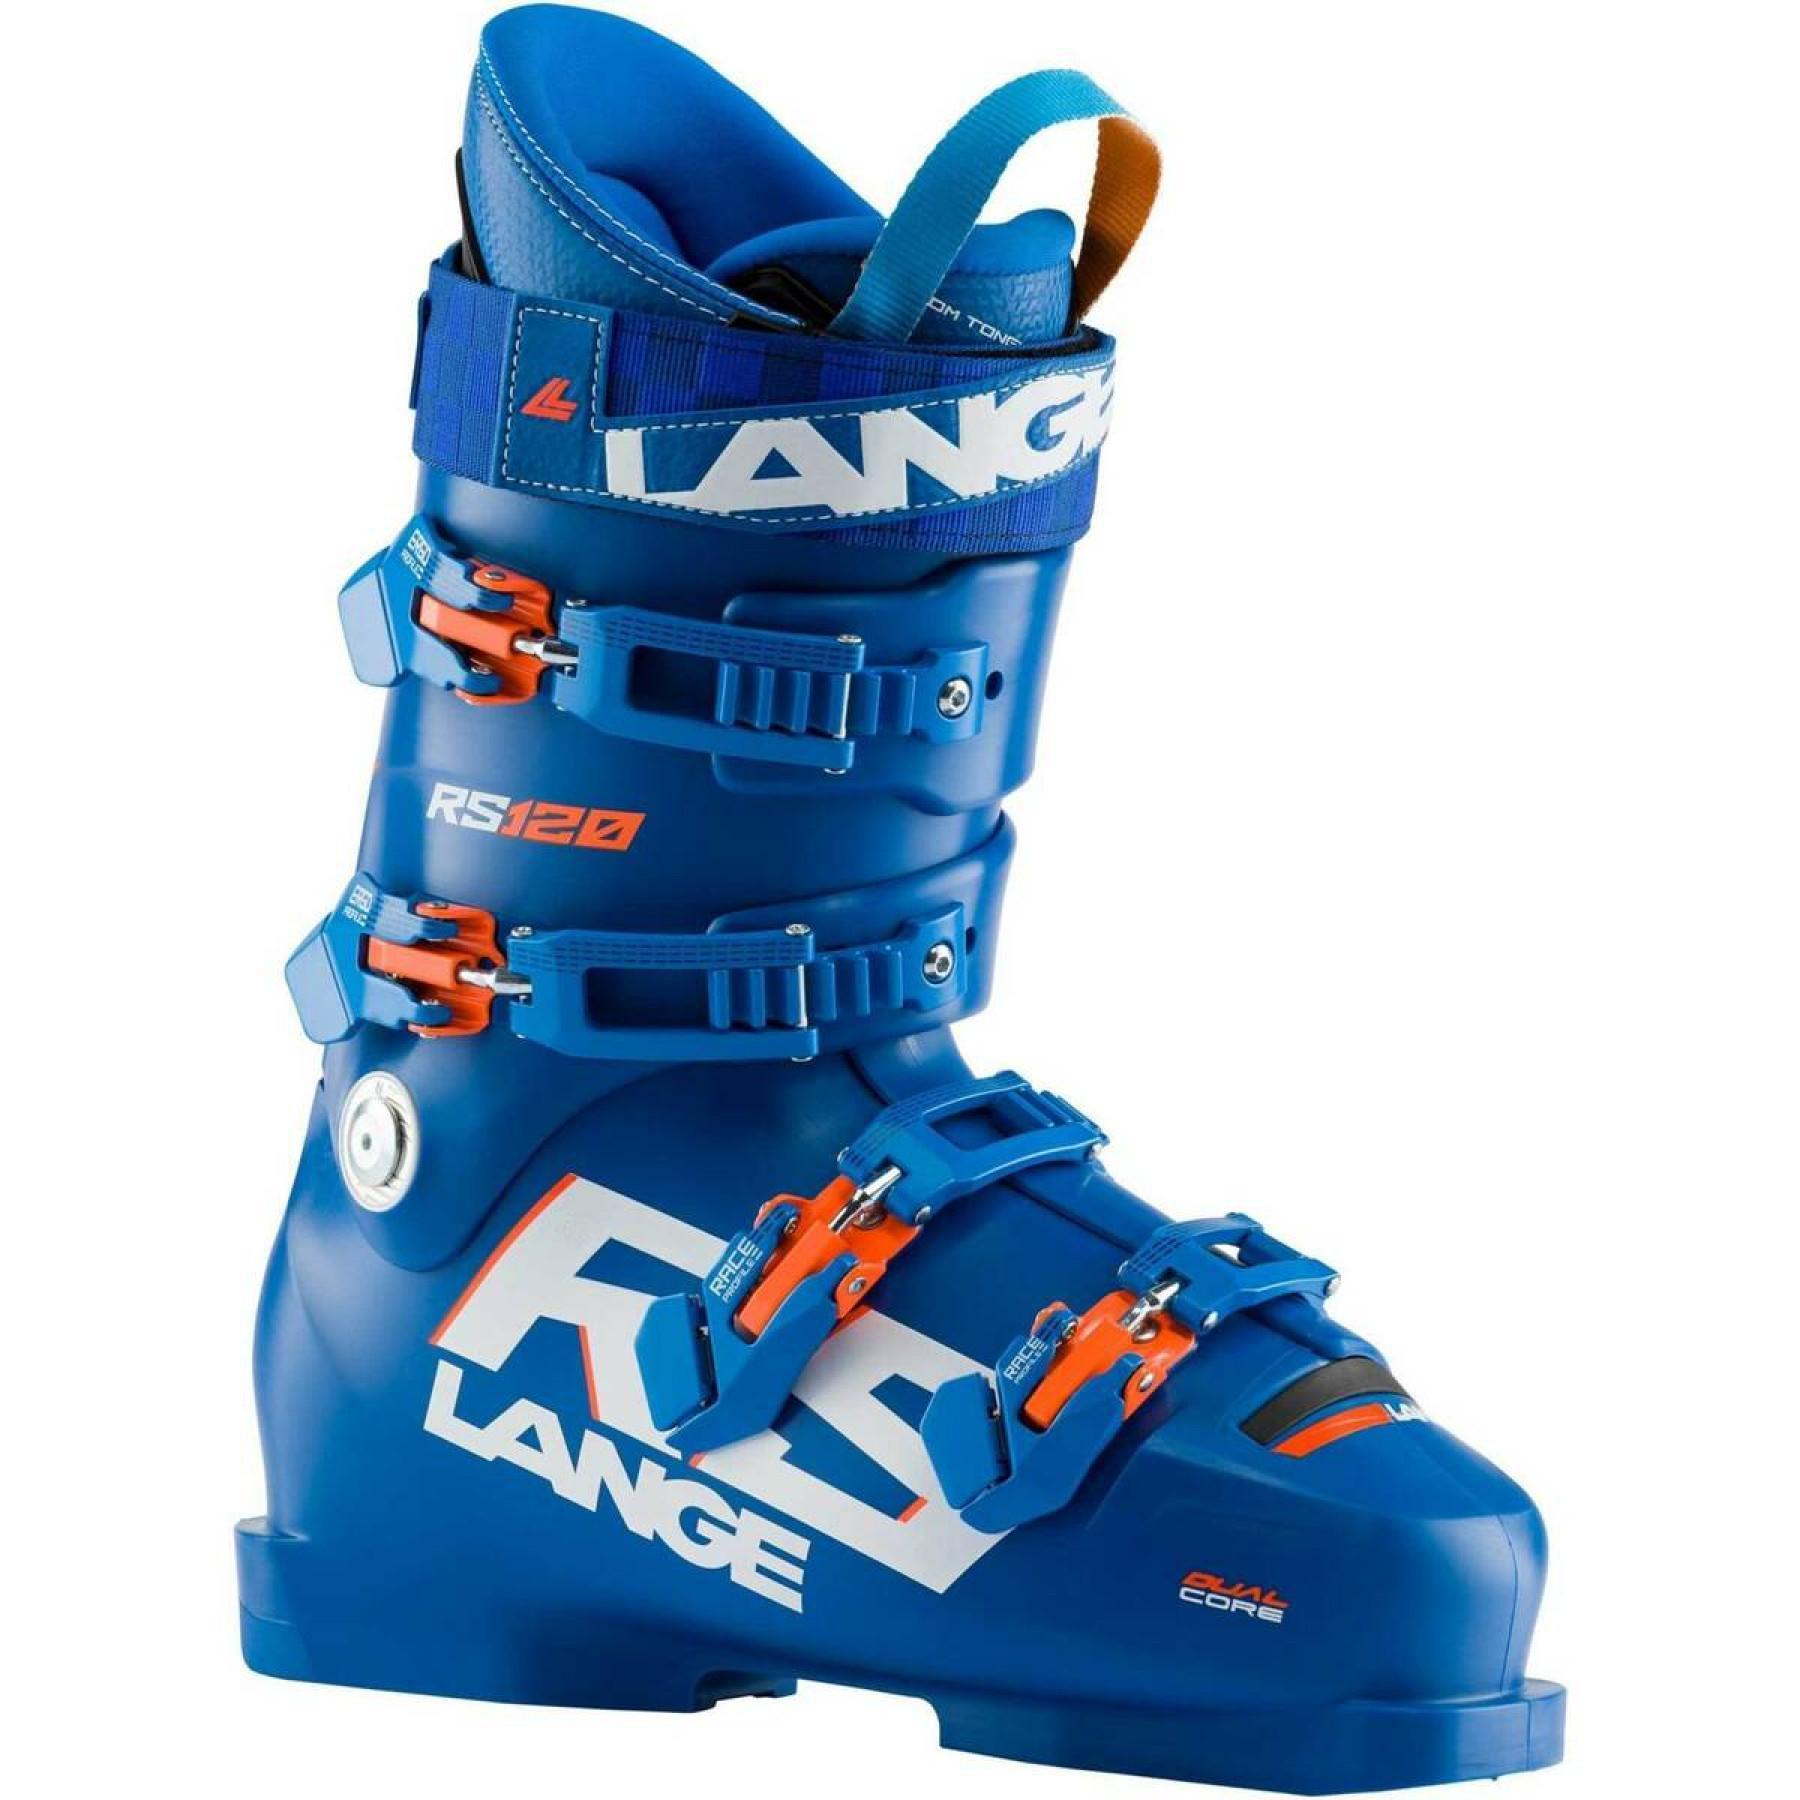 Chaussures de ski Lange rs 120